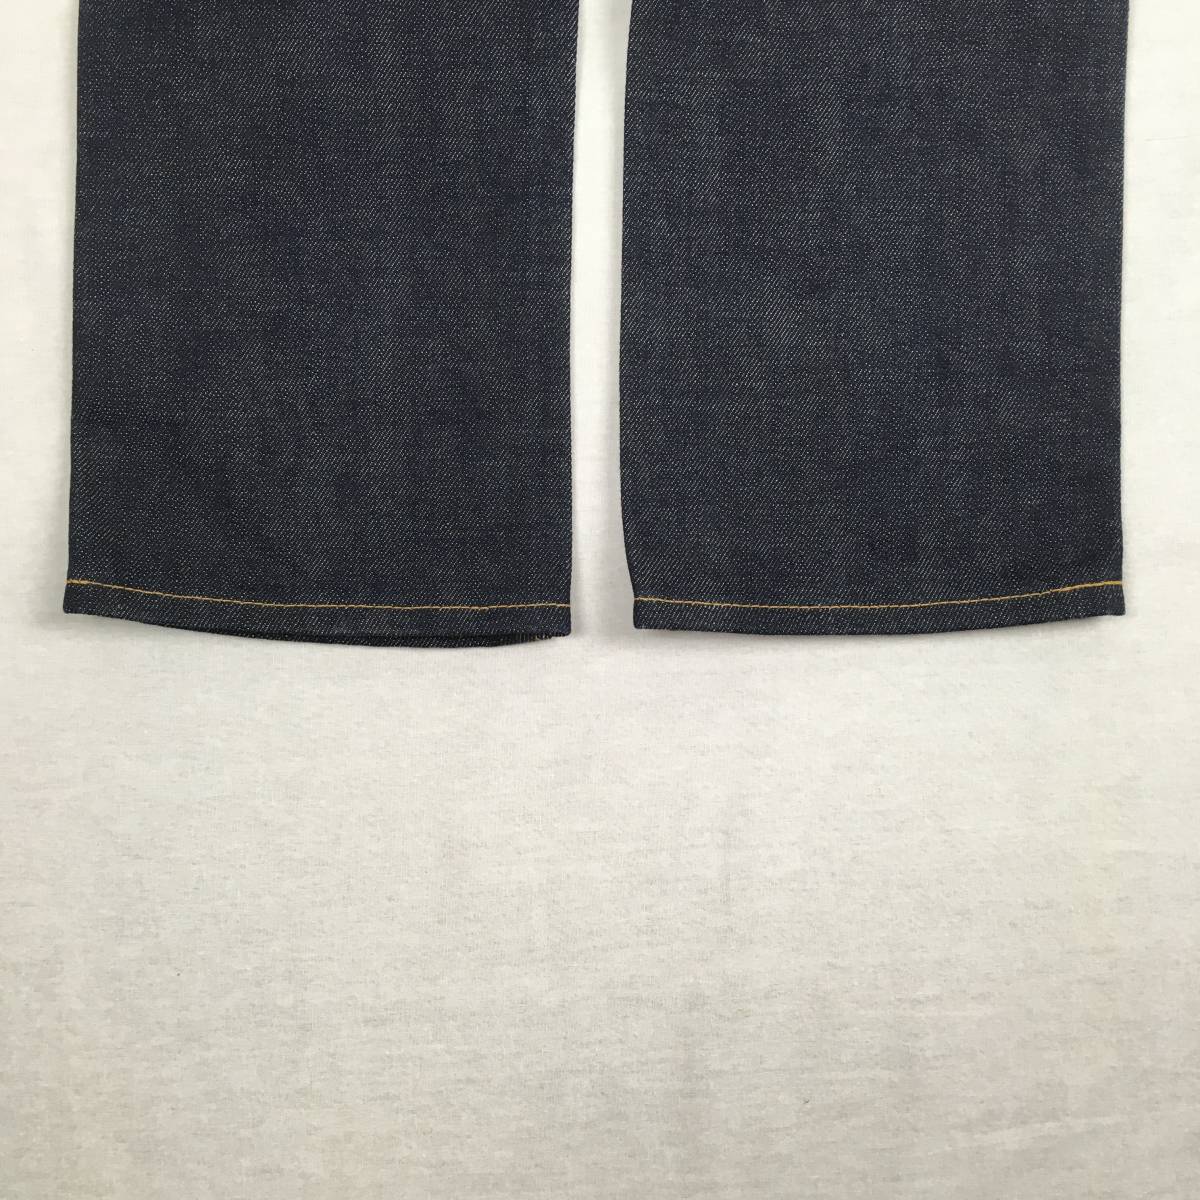 【 красивая вещь  *   старый  】DENIME  De ... ORIZZONTI ... 505  сделано в Японии   женский   Denim    джинсы   W25 ... ... синий   красный ...  бумага ...